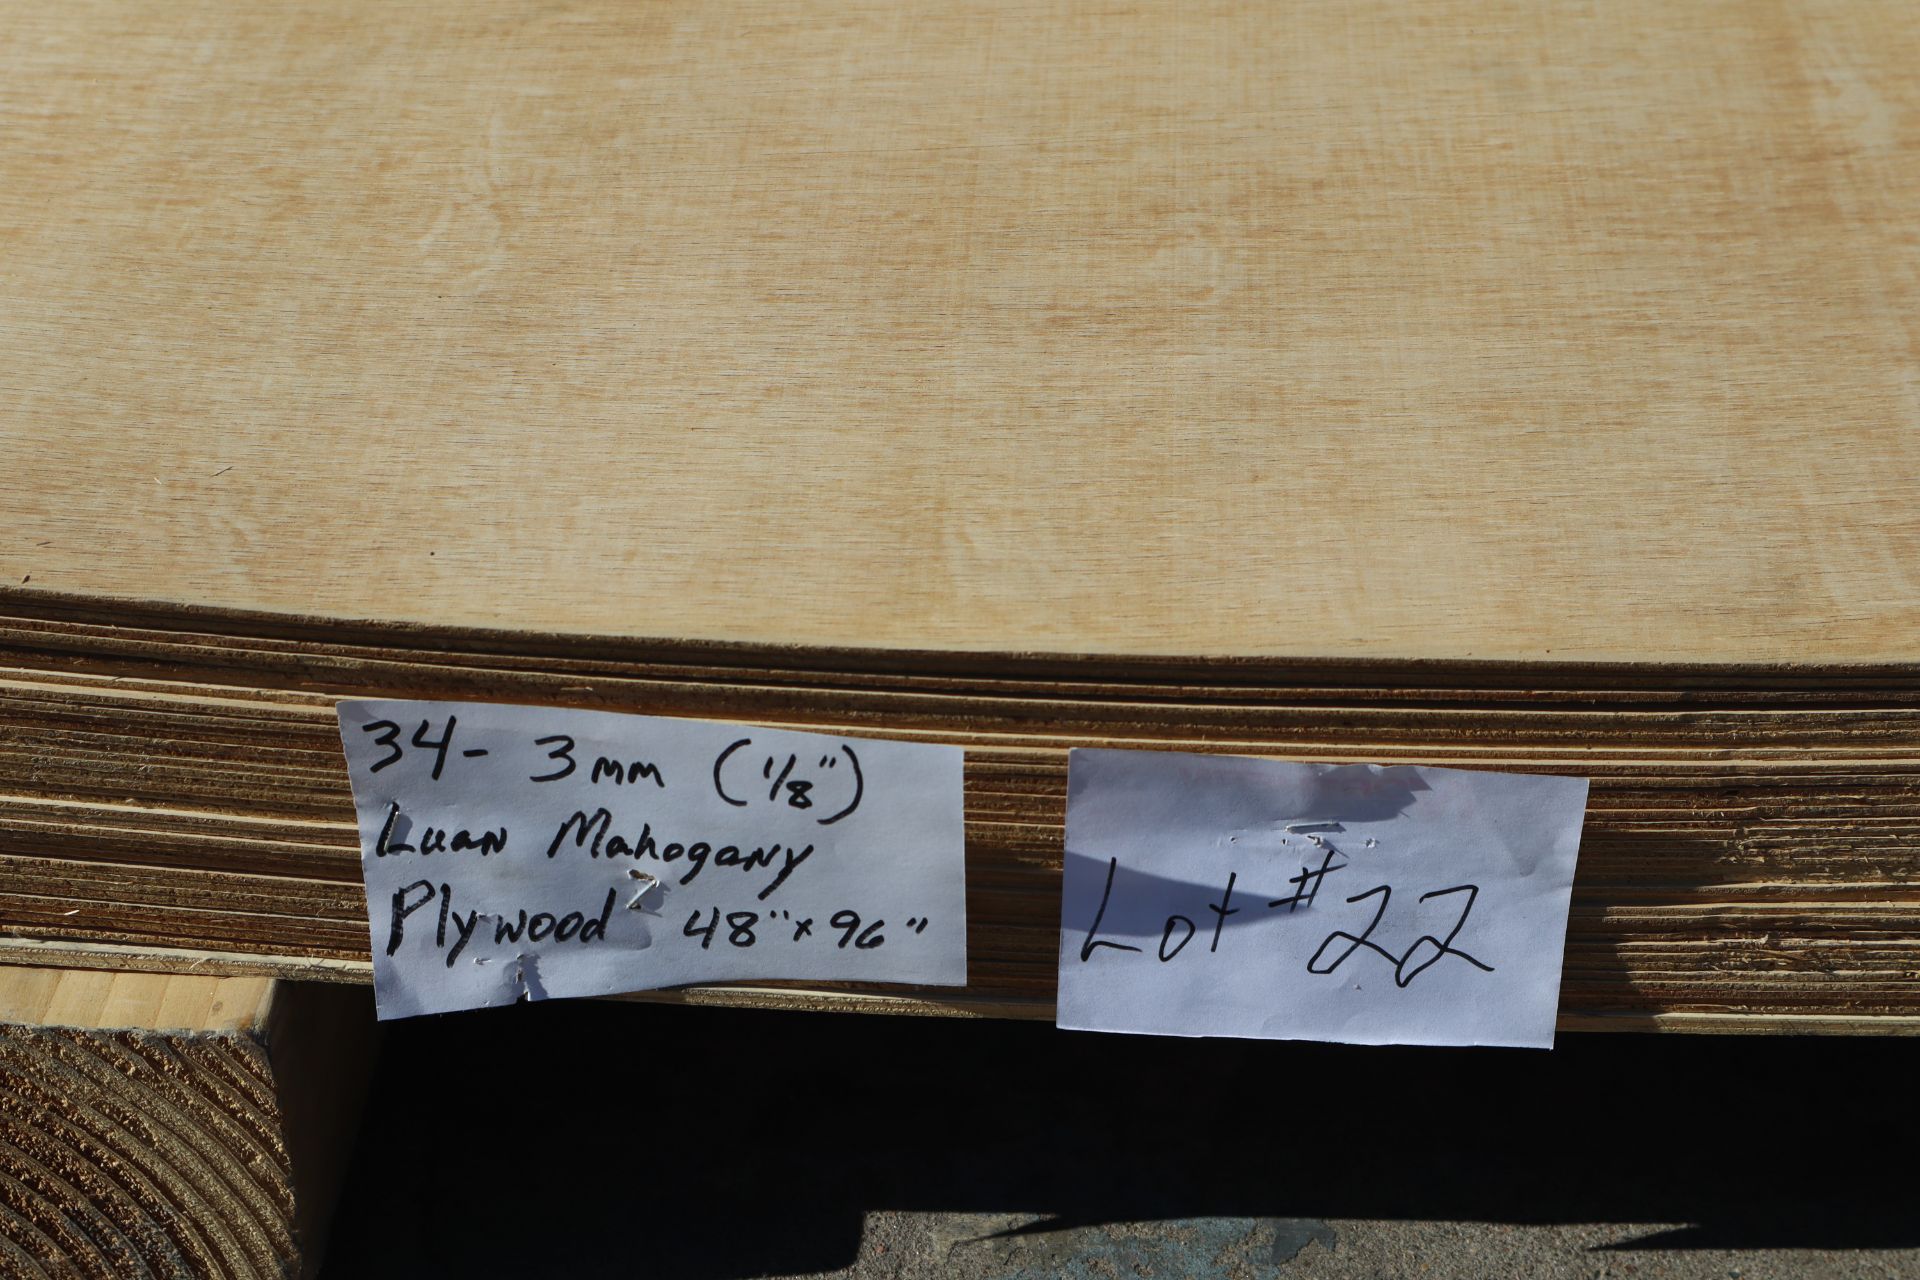 34-Sheets 3mm (1/8") Luan Mahogany Plywood, 48"x96" - Image 4 of 4